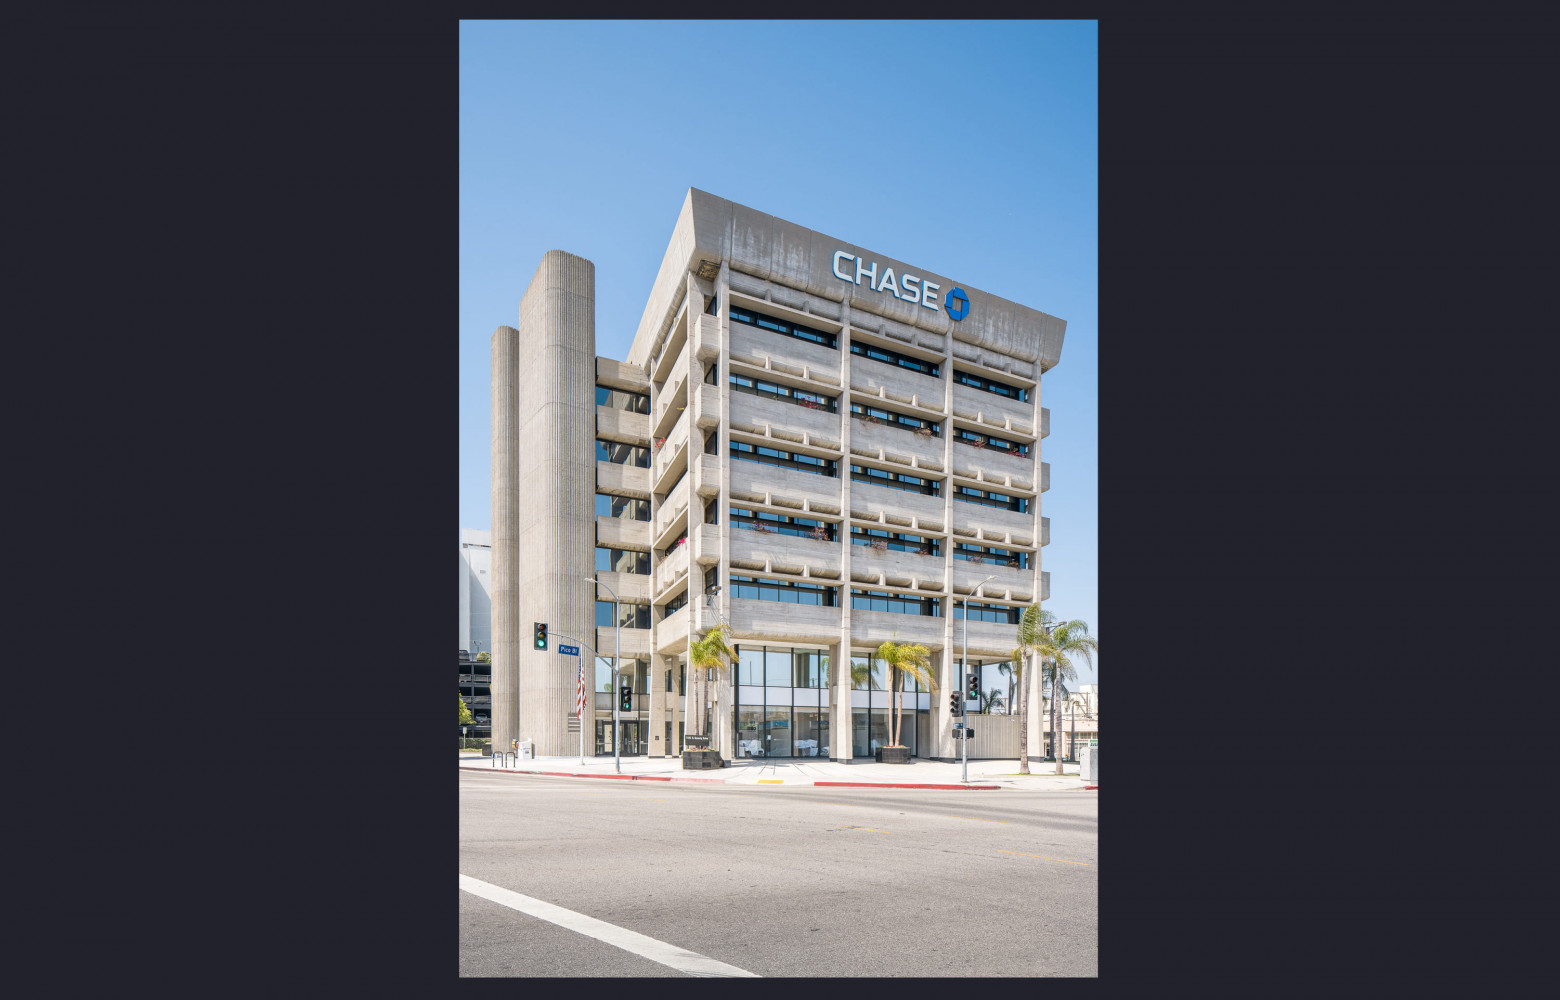 Liberty Savings and Loan Building, désormais occupé par la Chase, par Kurt Meyer and Associates.